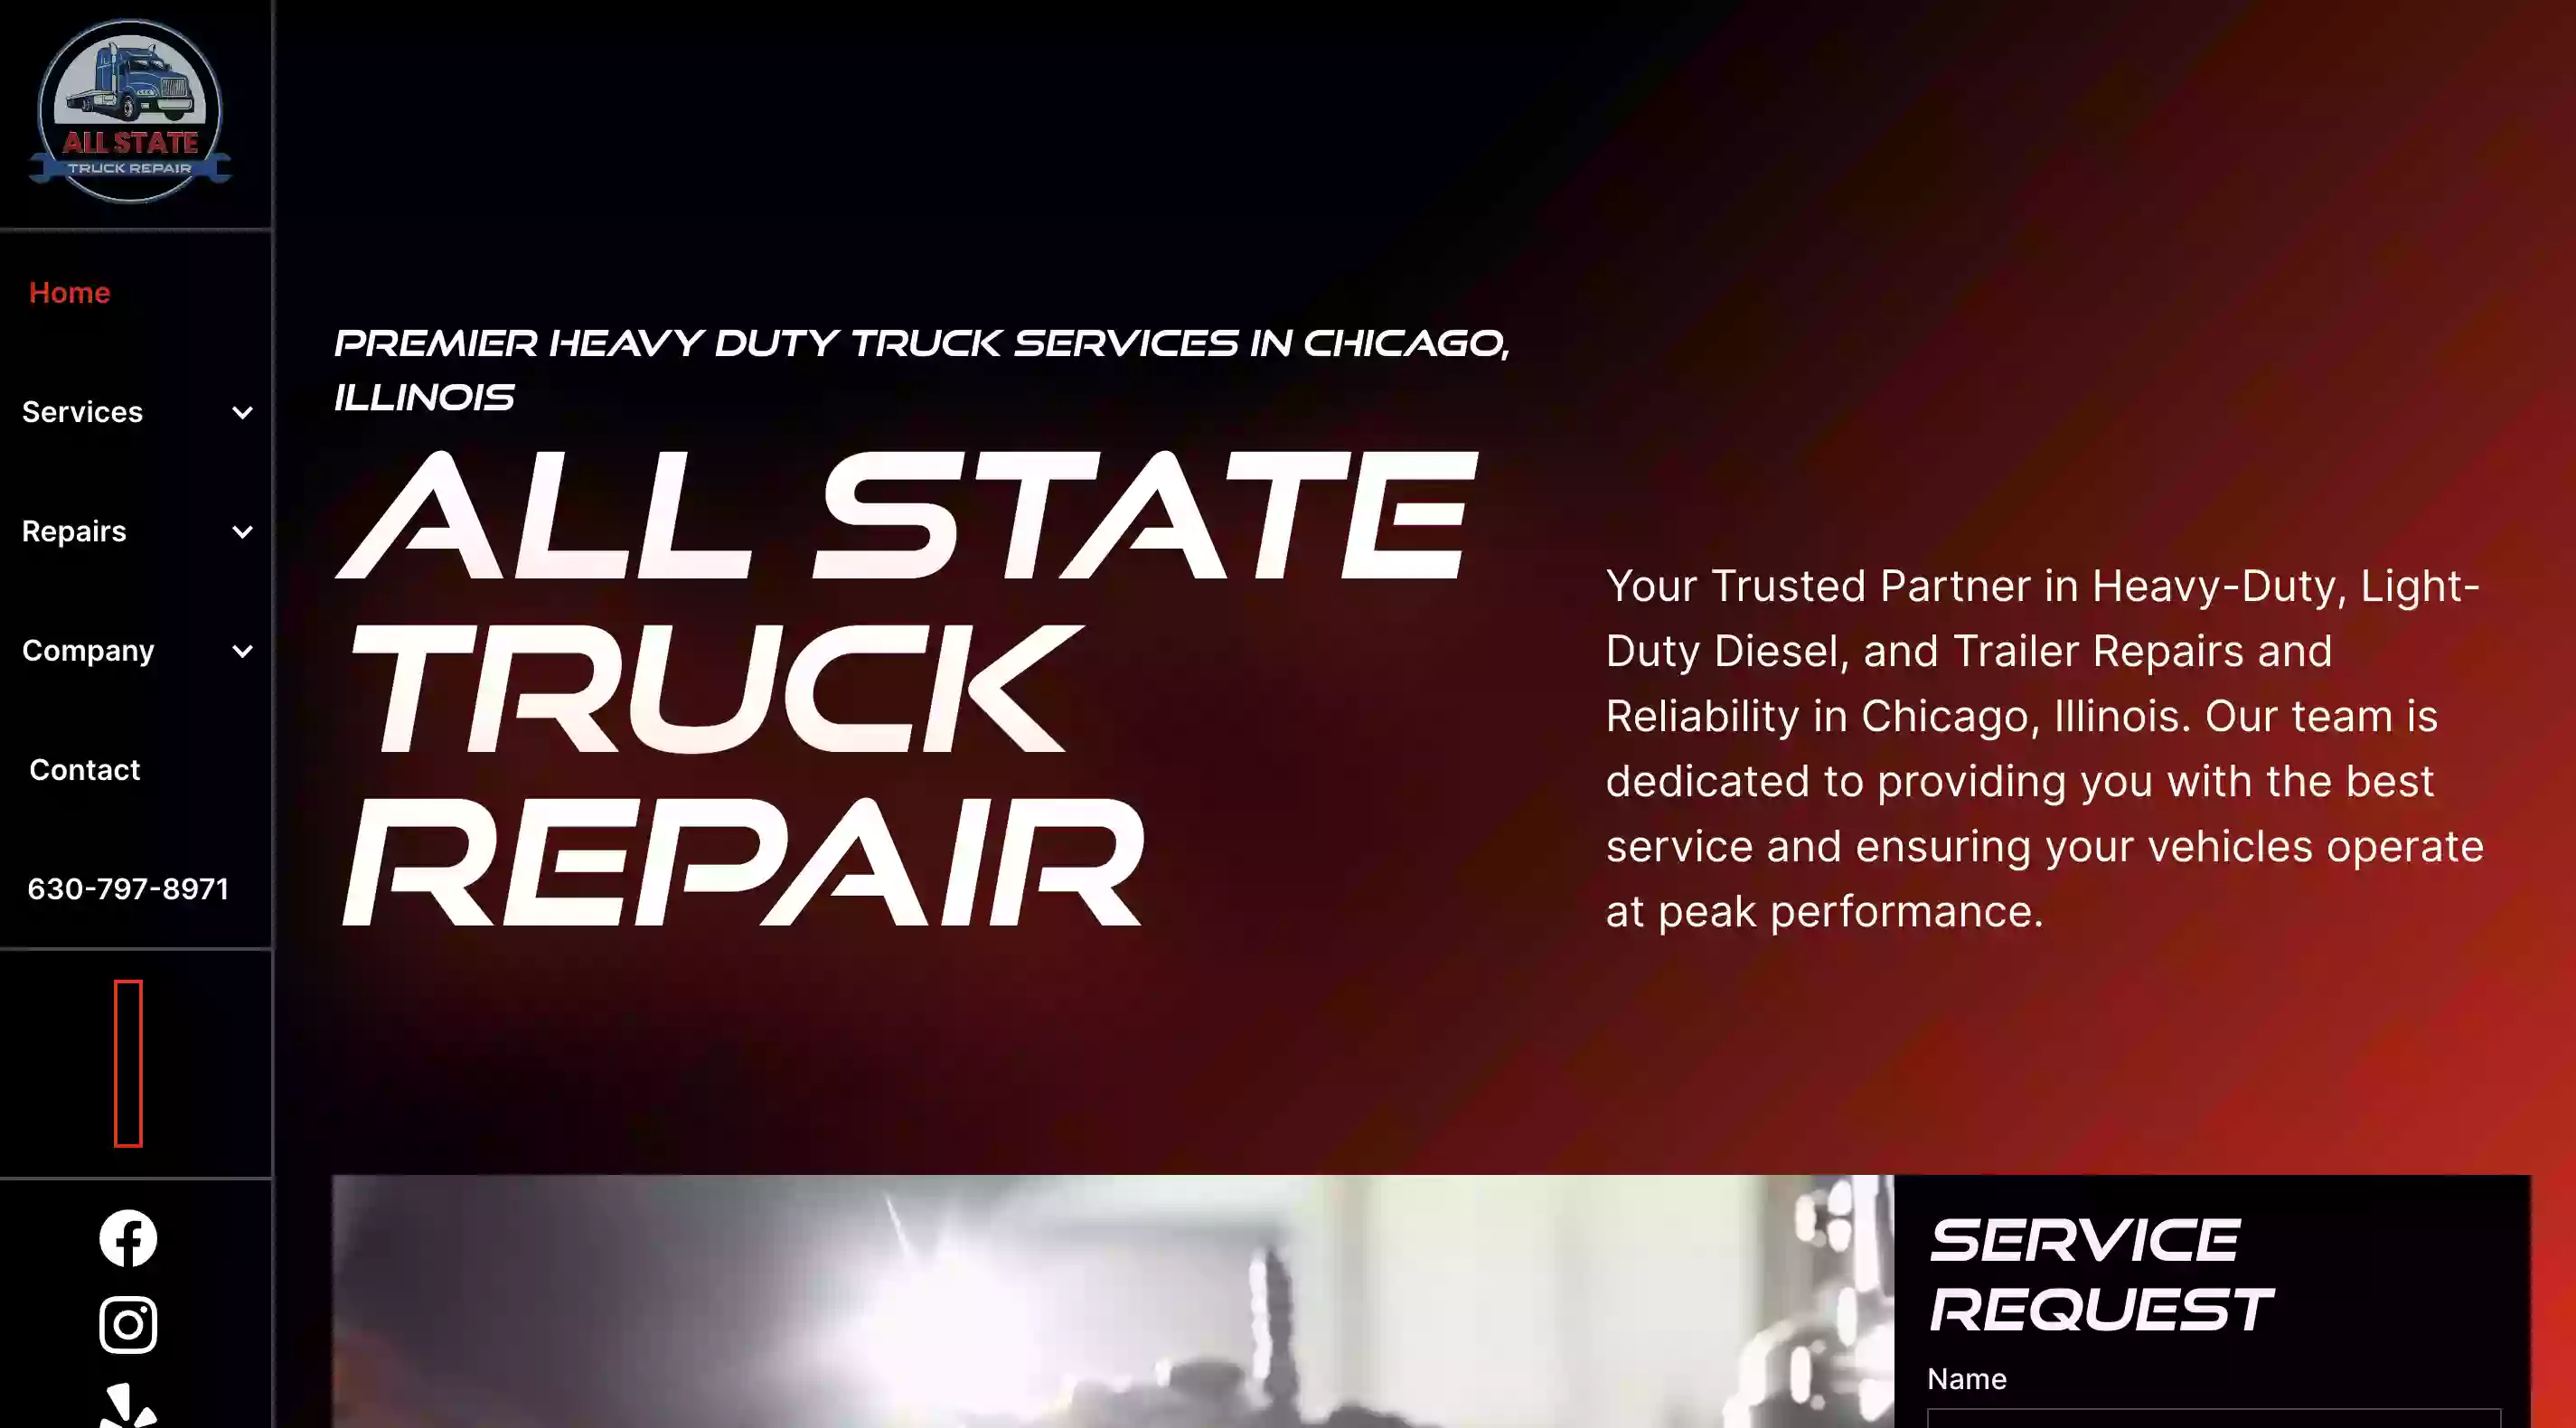 Allstate Truck Repair